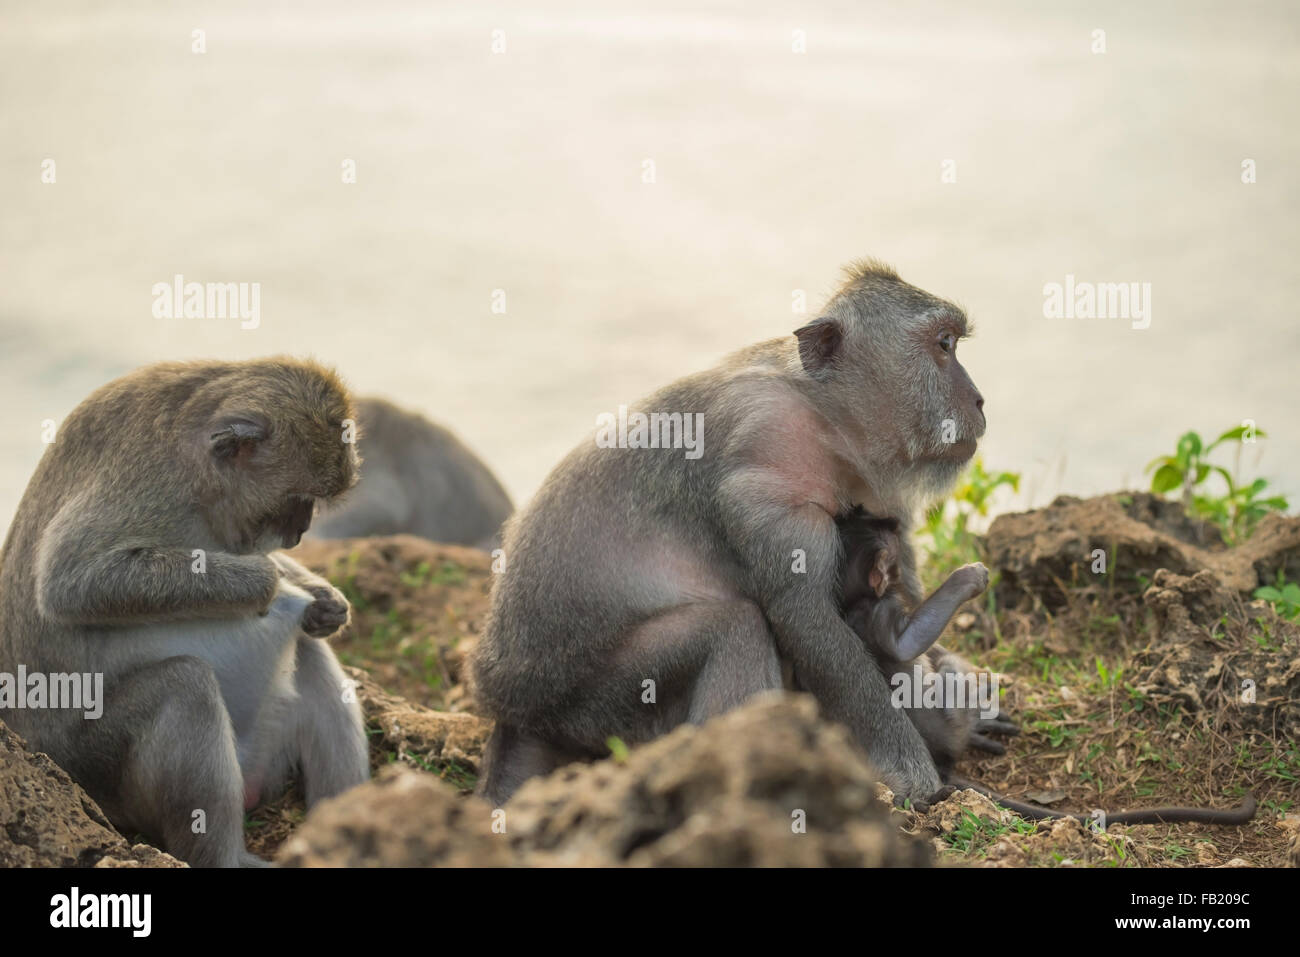 Wild monkey famiglia nel loro habitat naturale vicino, mom holding bambino mentre guardando a distanza. Foto Stock